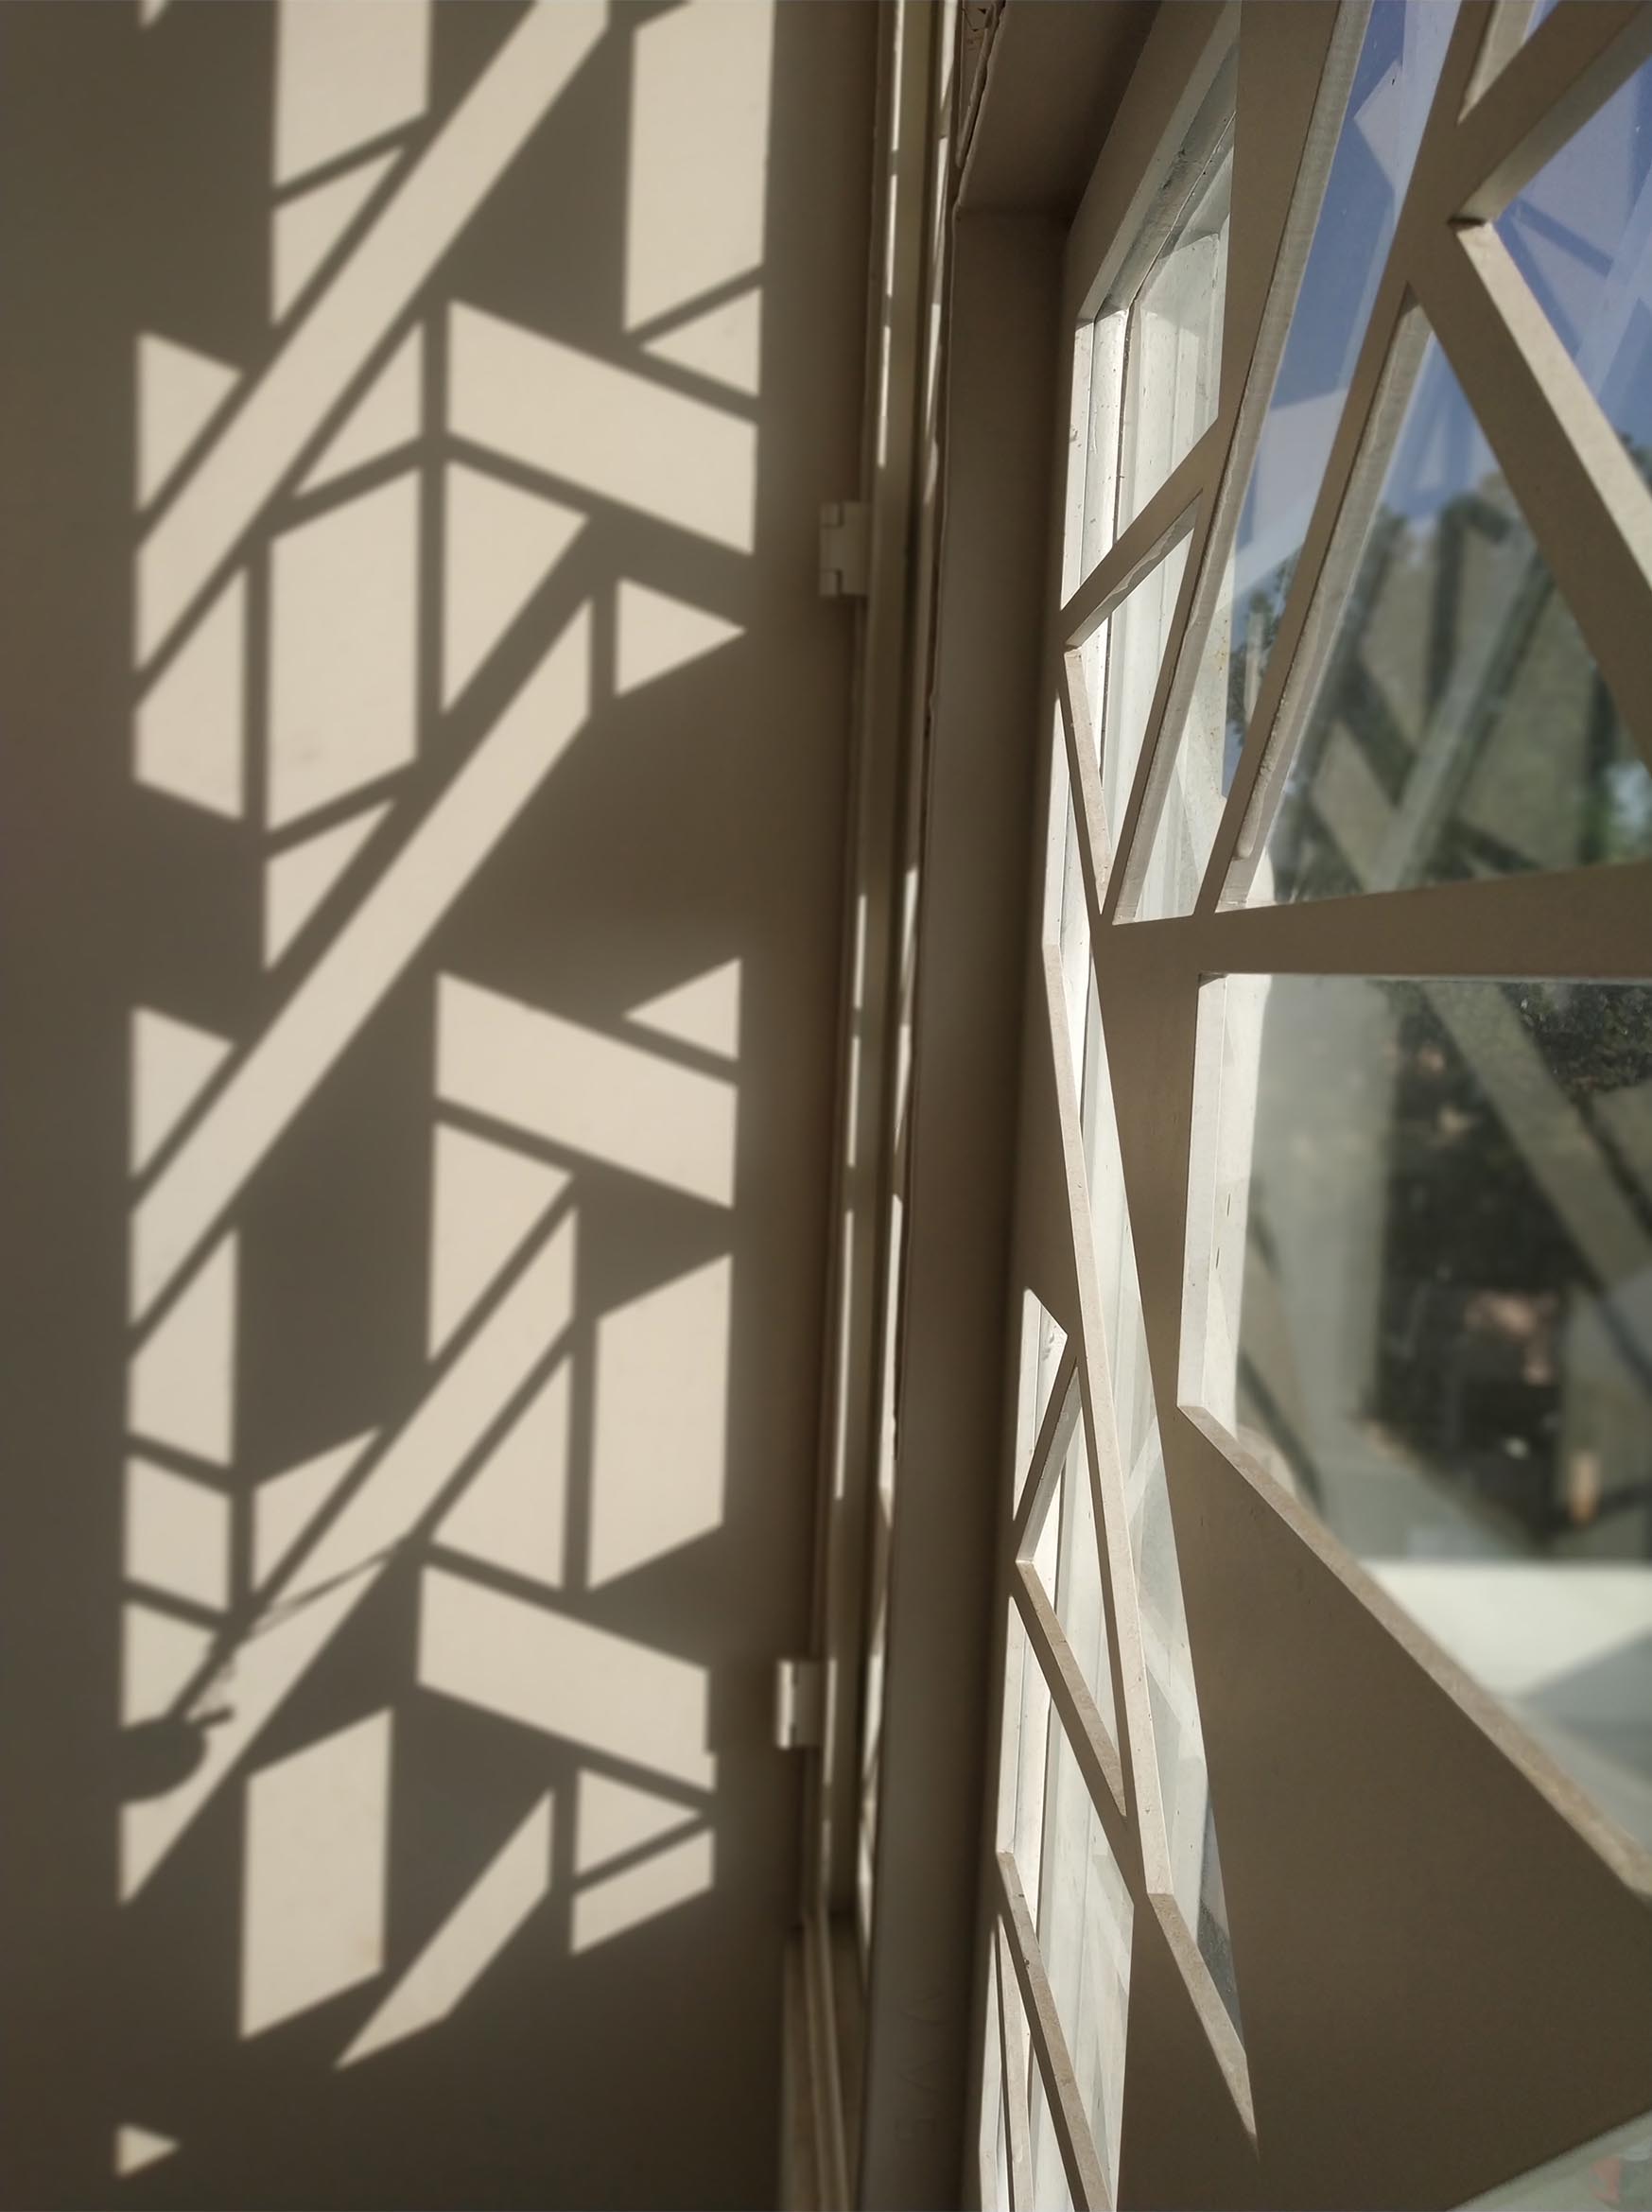 Màn hình cửa sổ màu trắng với thiết kế hình học tạo bóng thú vị trên tường và sàn nhà.